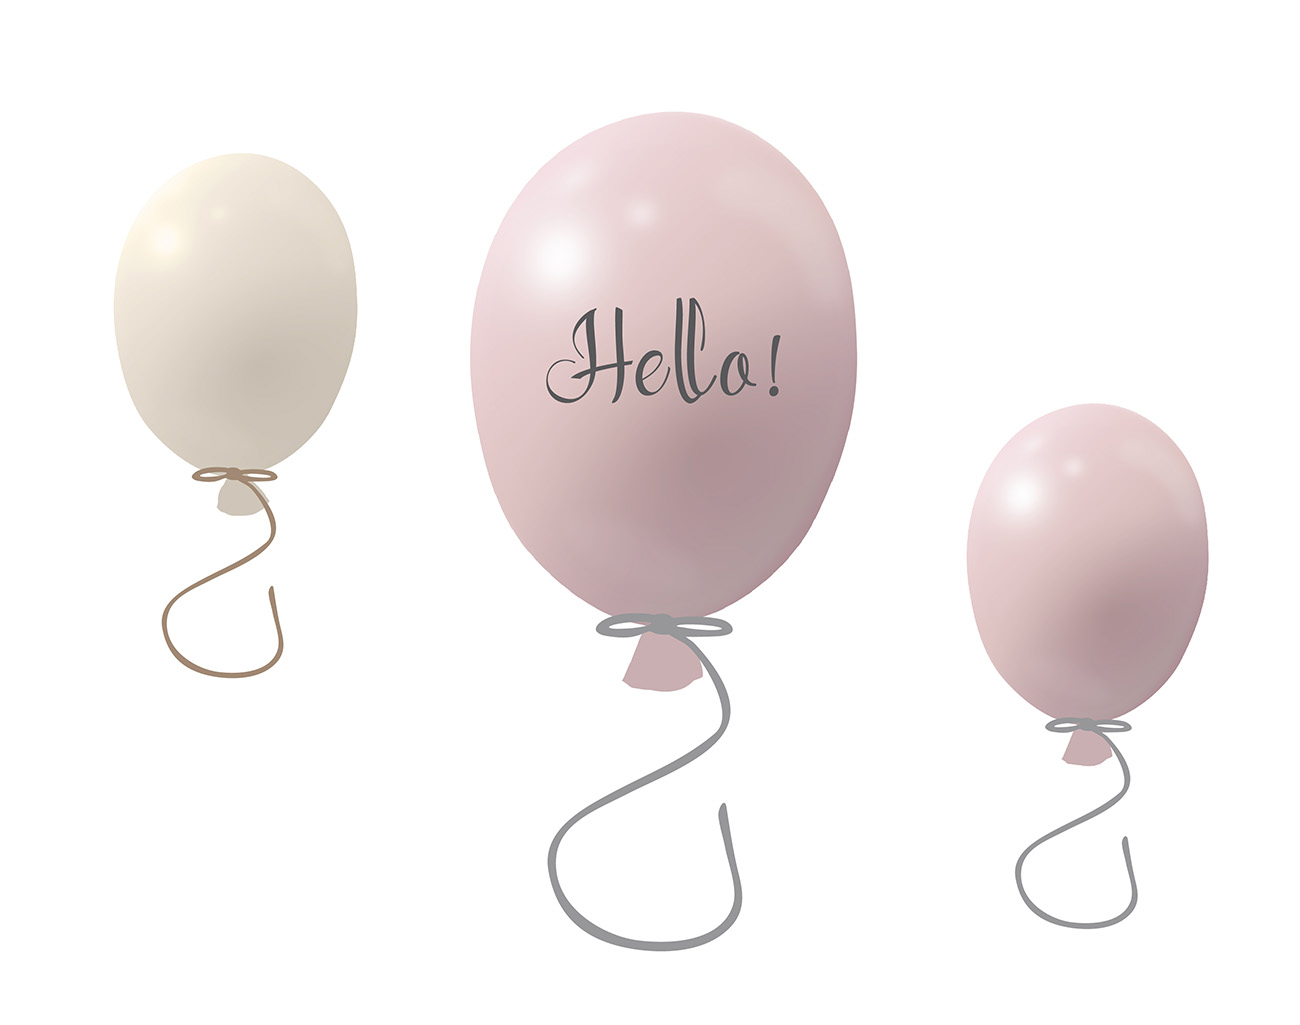 Väggklistermärke partyballonger 3-pack, powder rose Väggklistermärke bestående av en stor rosa ballong med texten Hello och två mindre ballonger